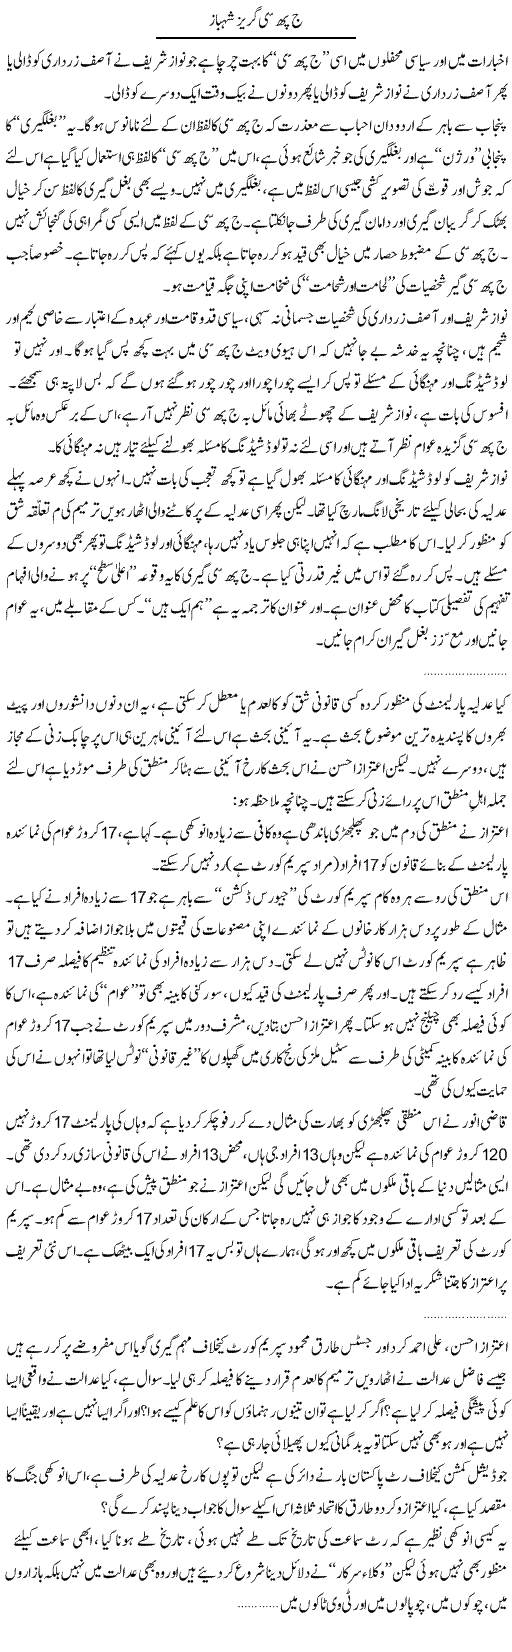 Guzez Shahbaz Express Column Abdullah Tariq 23 April 2010